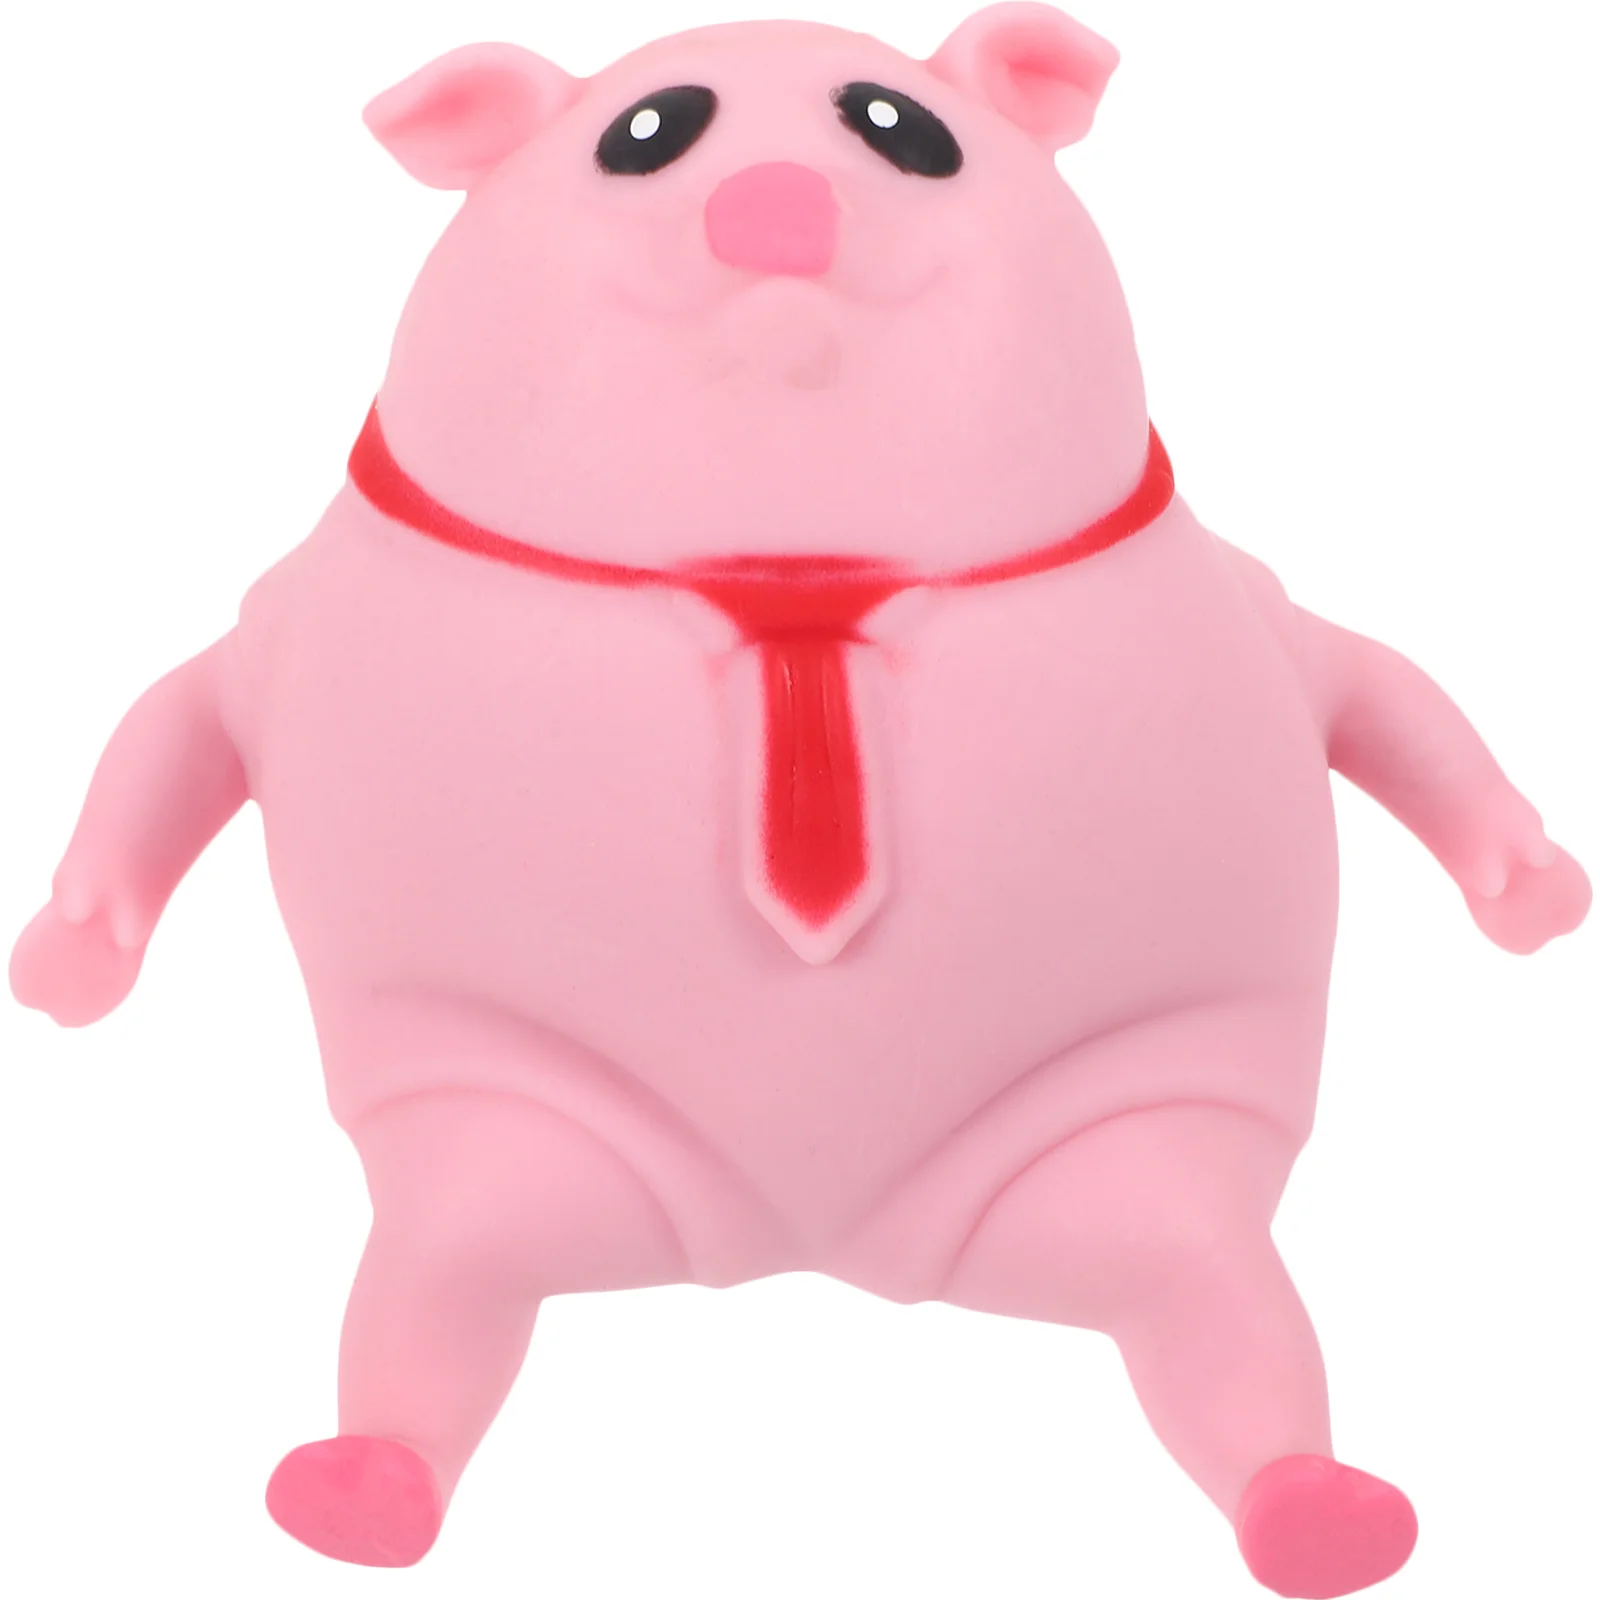 

Игрушка-свинья медленно восстанавливающая форму, мультяшная игрушка-сжималка, мягкая игрушка-свинья, подарок на день рождения для детей, игрушка-сжималка